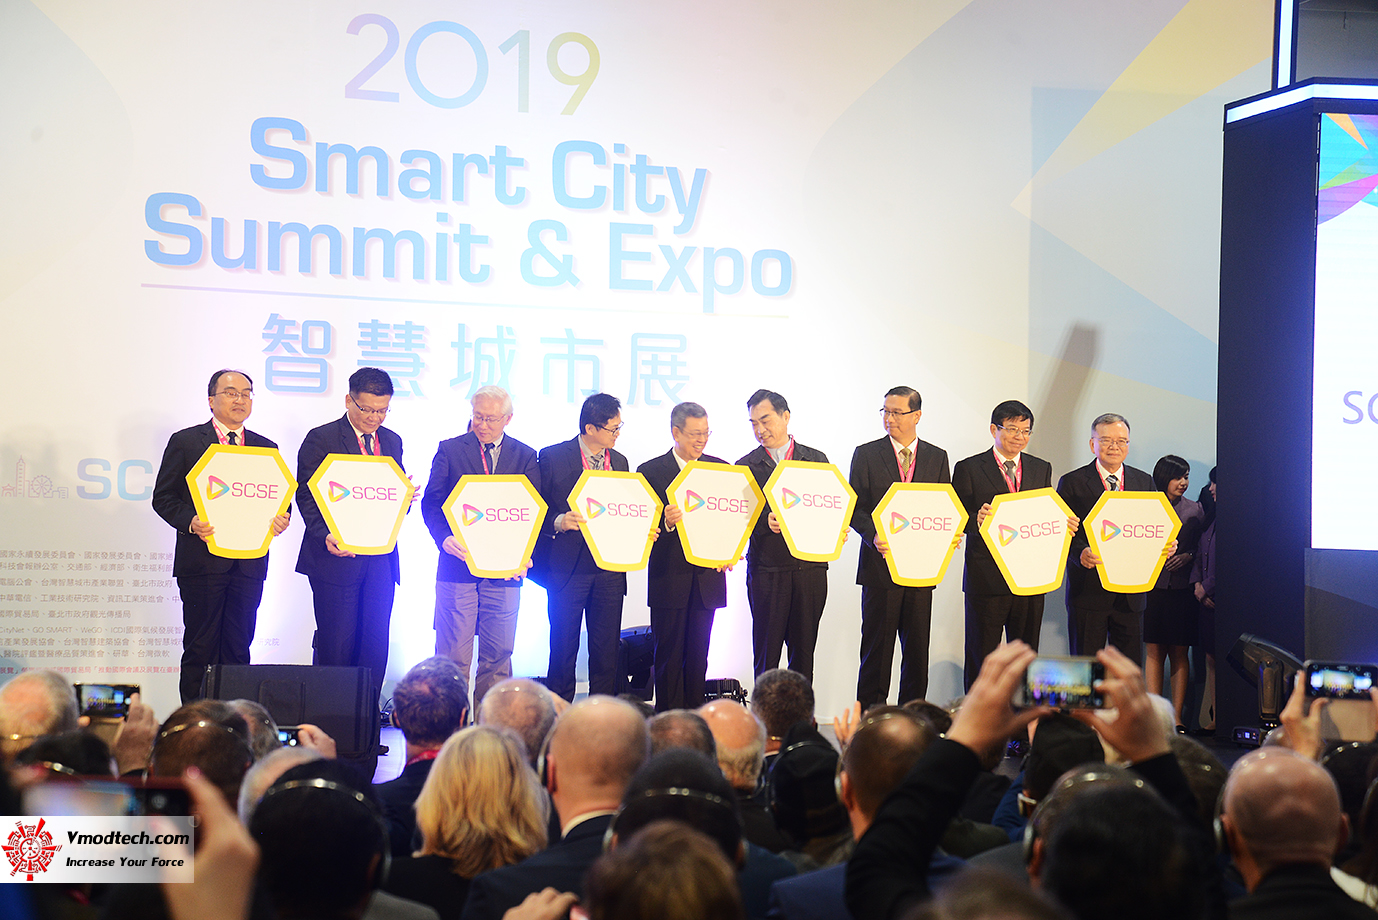 dsc 8343 เยี่ยมชมพิธีเปิด 2019 SMART CITY SUMMIT & EXPO ณ กรุงไทเป ประเทศไต้หวัน 